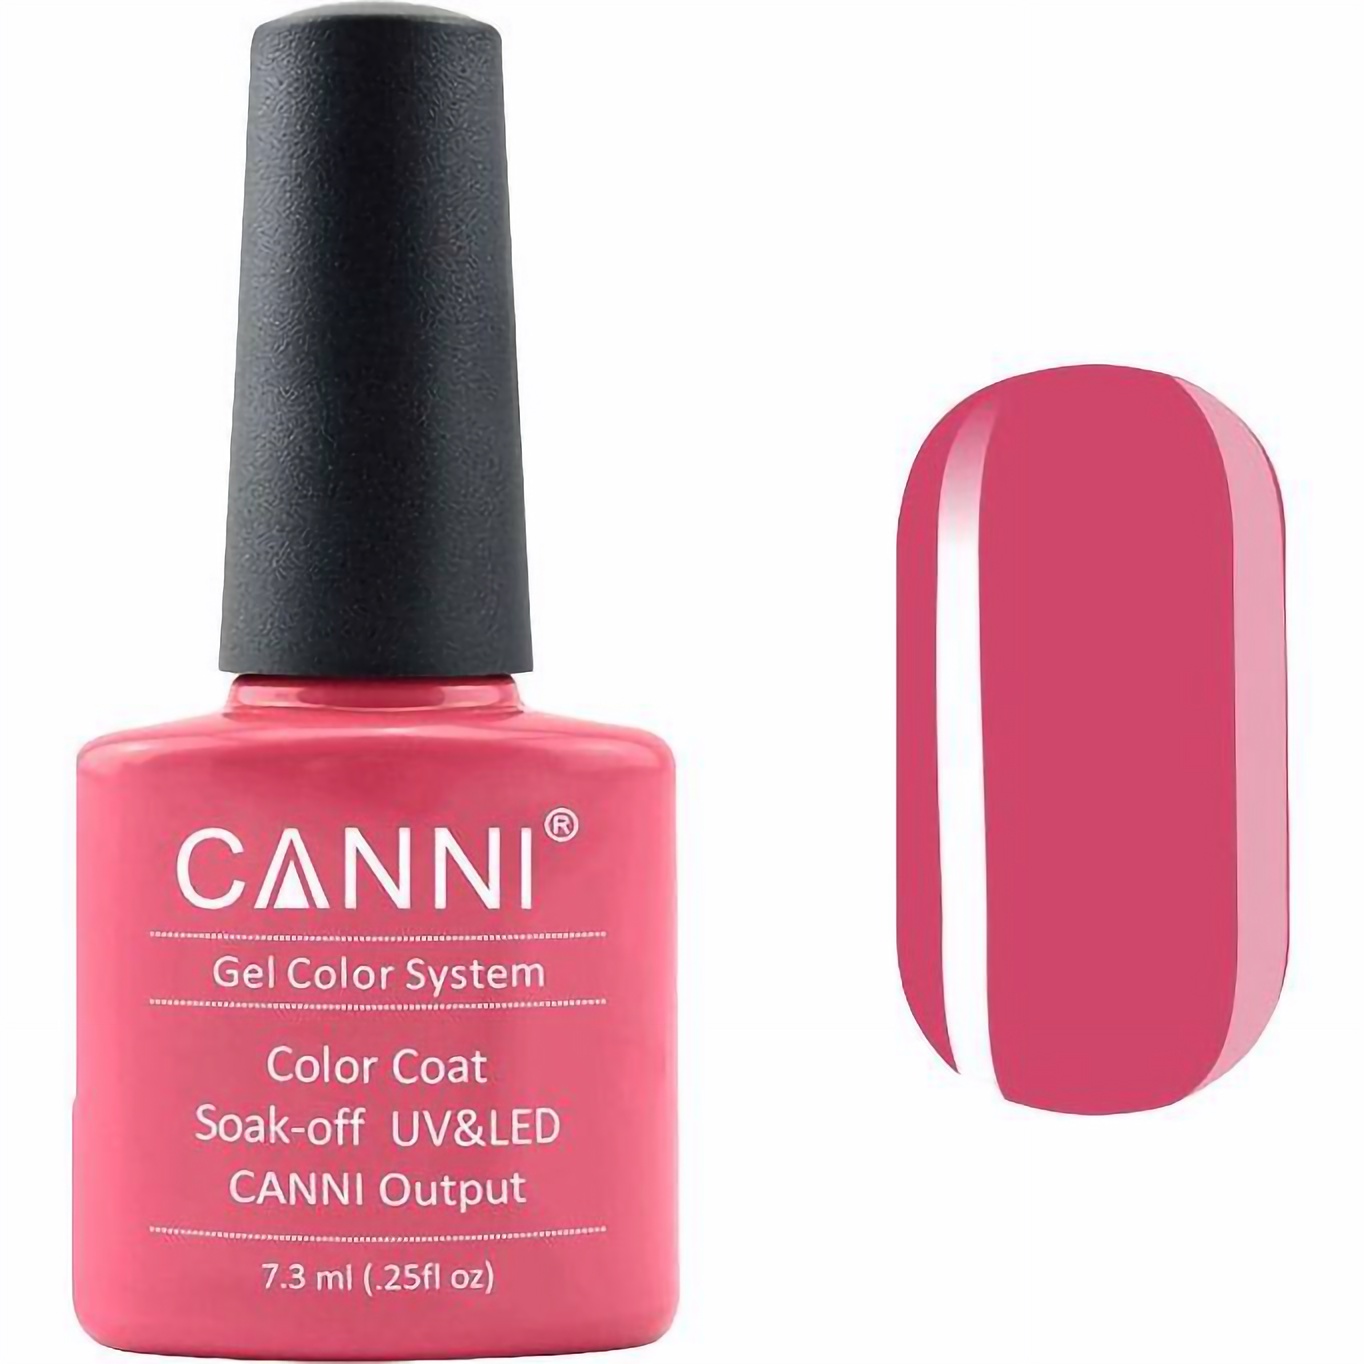 Гель-лак Canni Color Coat Soak-off UV&LED 121 темно-лососевий 7.3 мл - фото 1